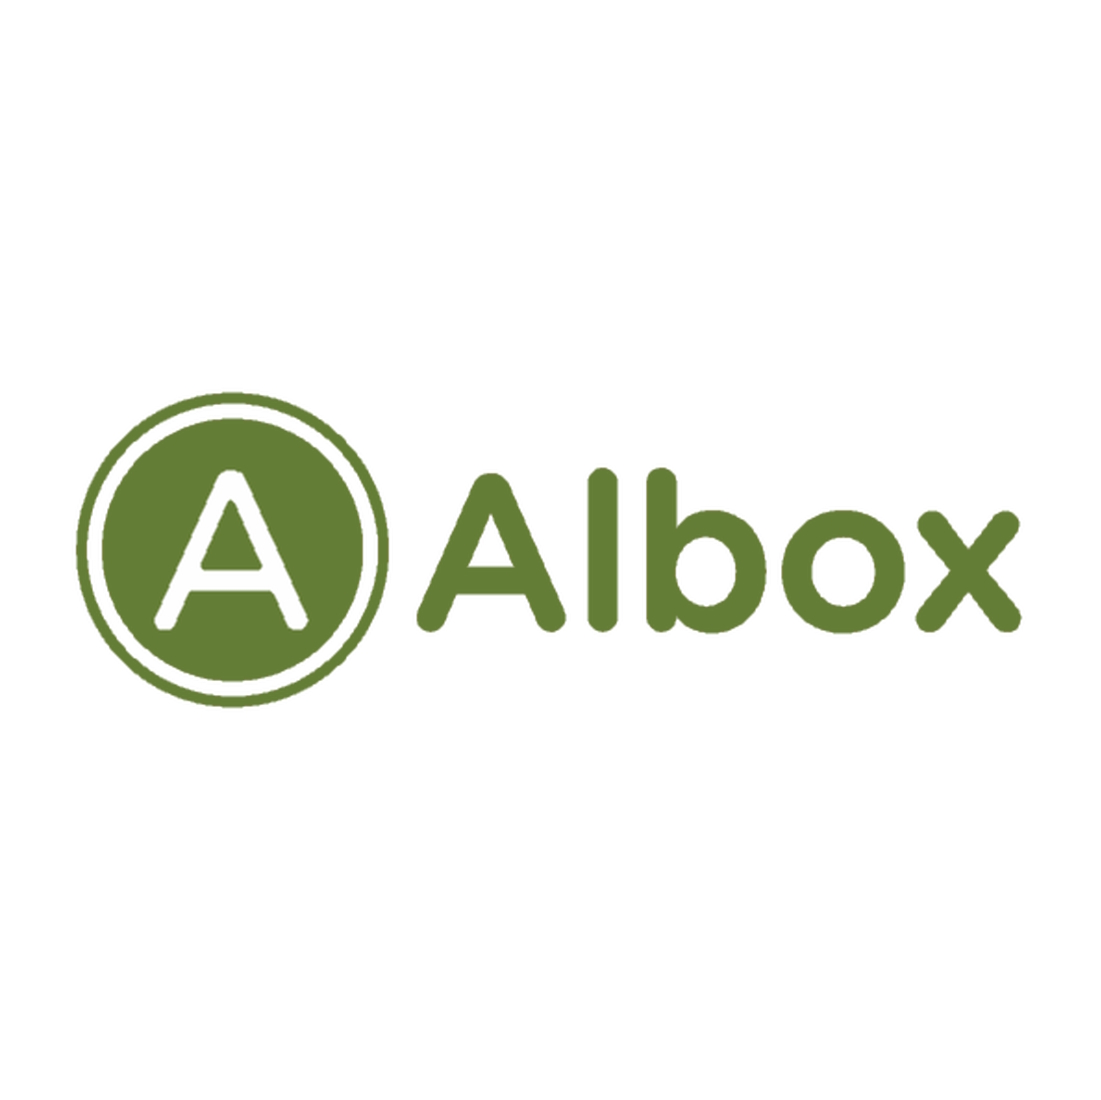 Albox